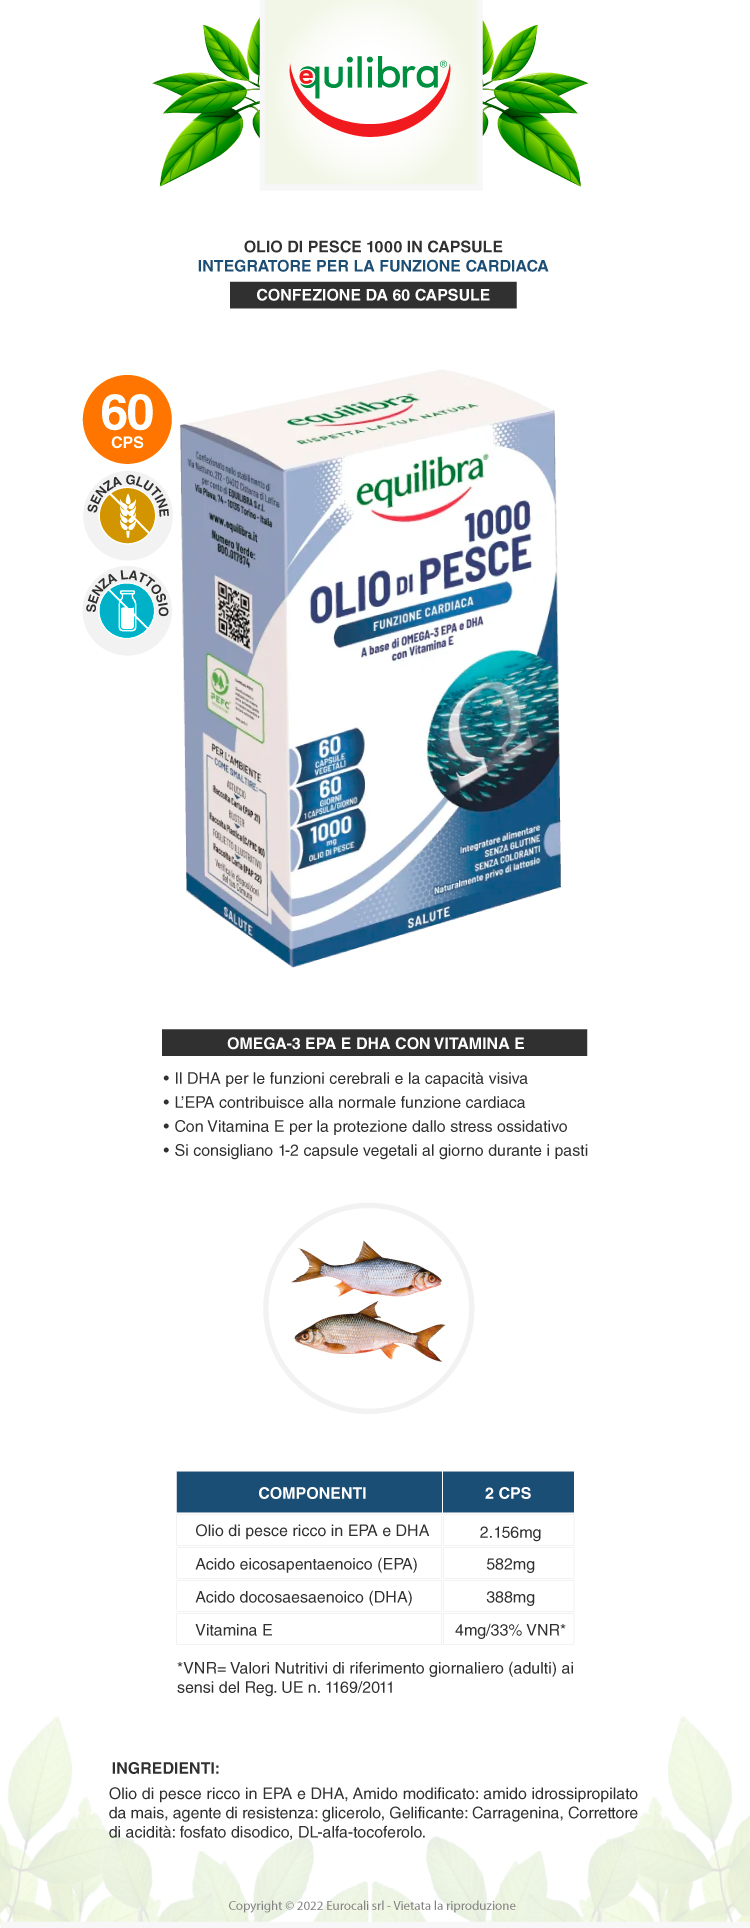 equilibra integratore olio di pesce 1000